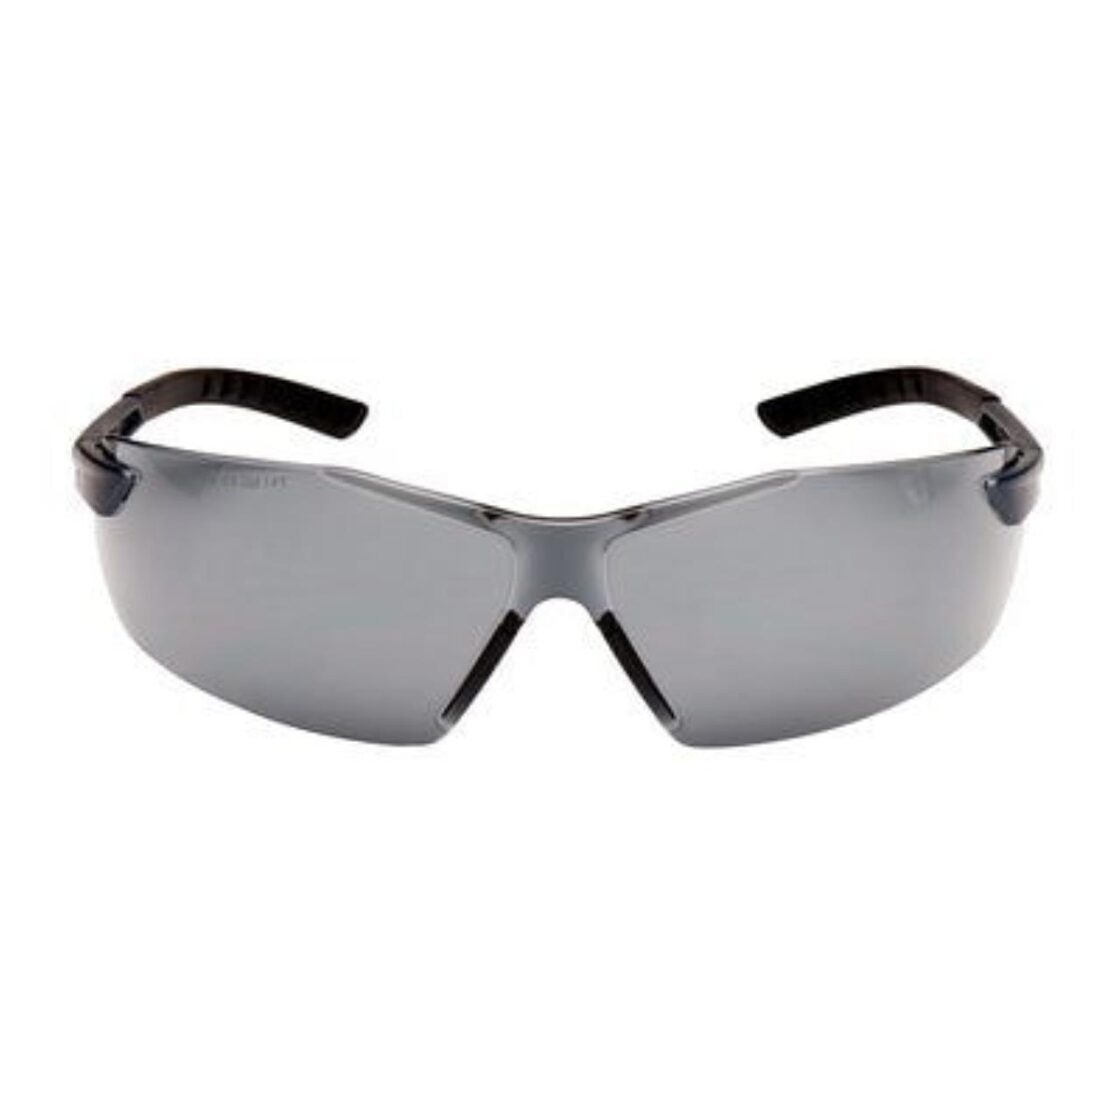 Einstellbare Schutzbrille grau getönt